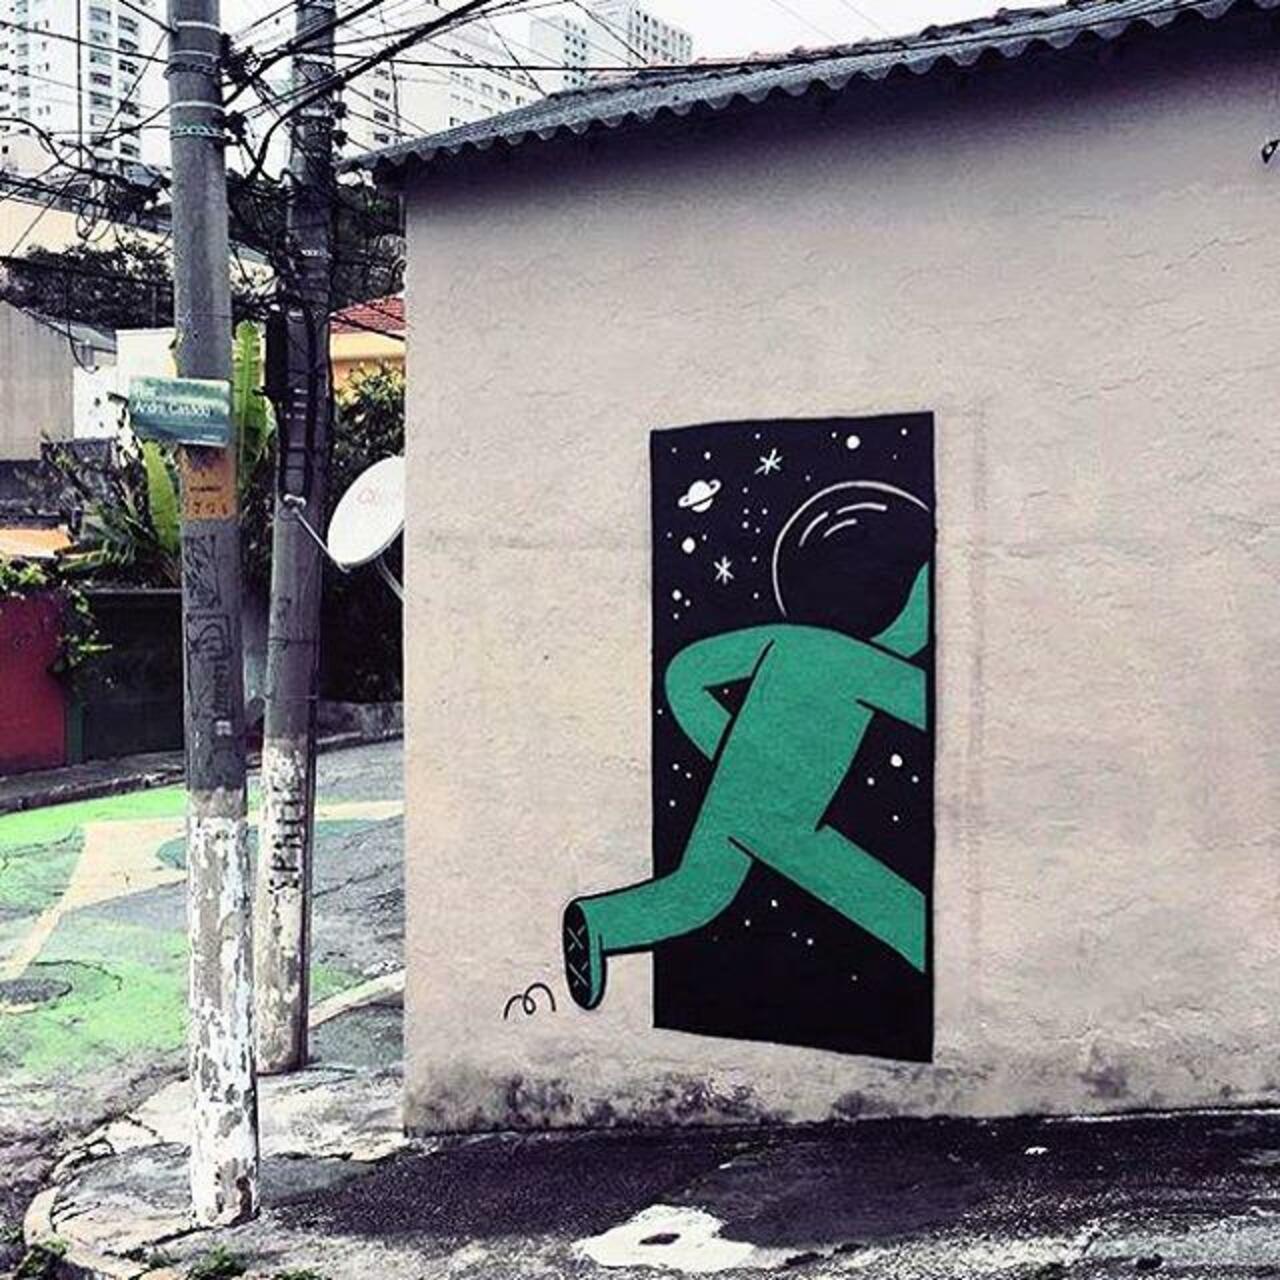 New art work from Muretz in Brazil. #StreetArt #Graffiti #Mural http://t.co/juhvZ06n1i